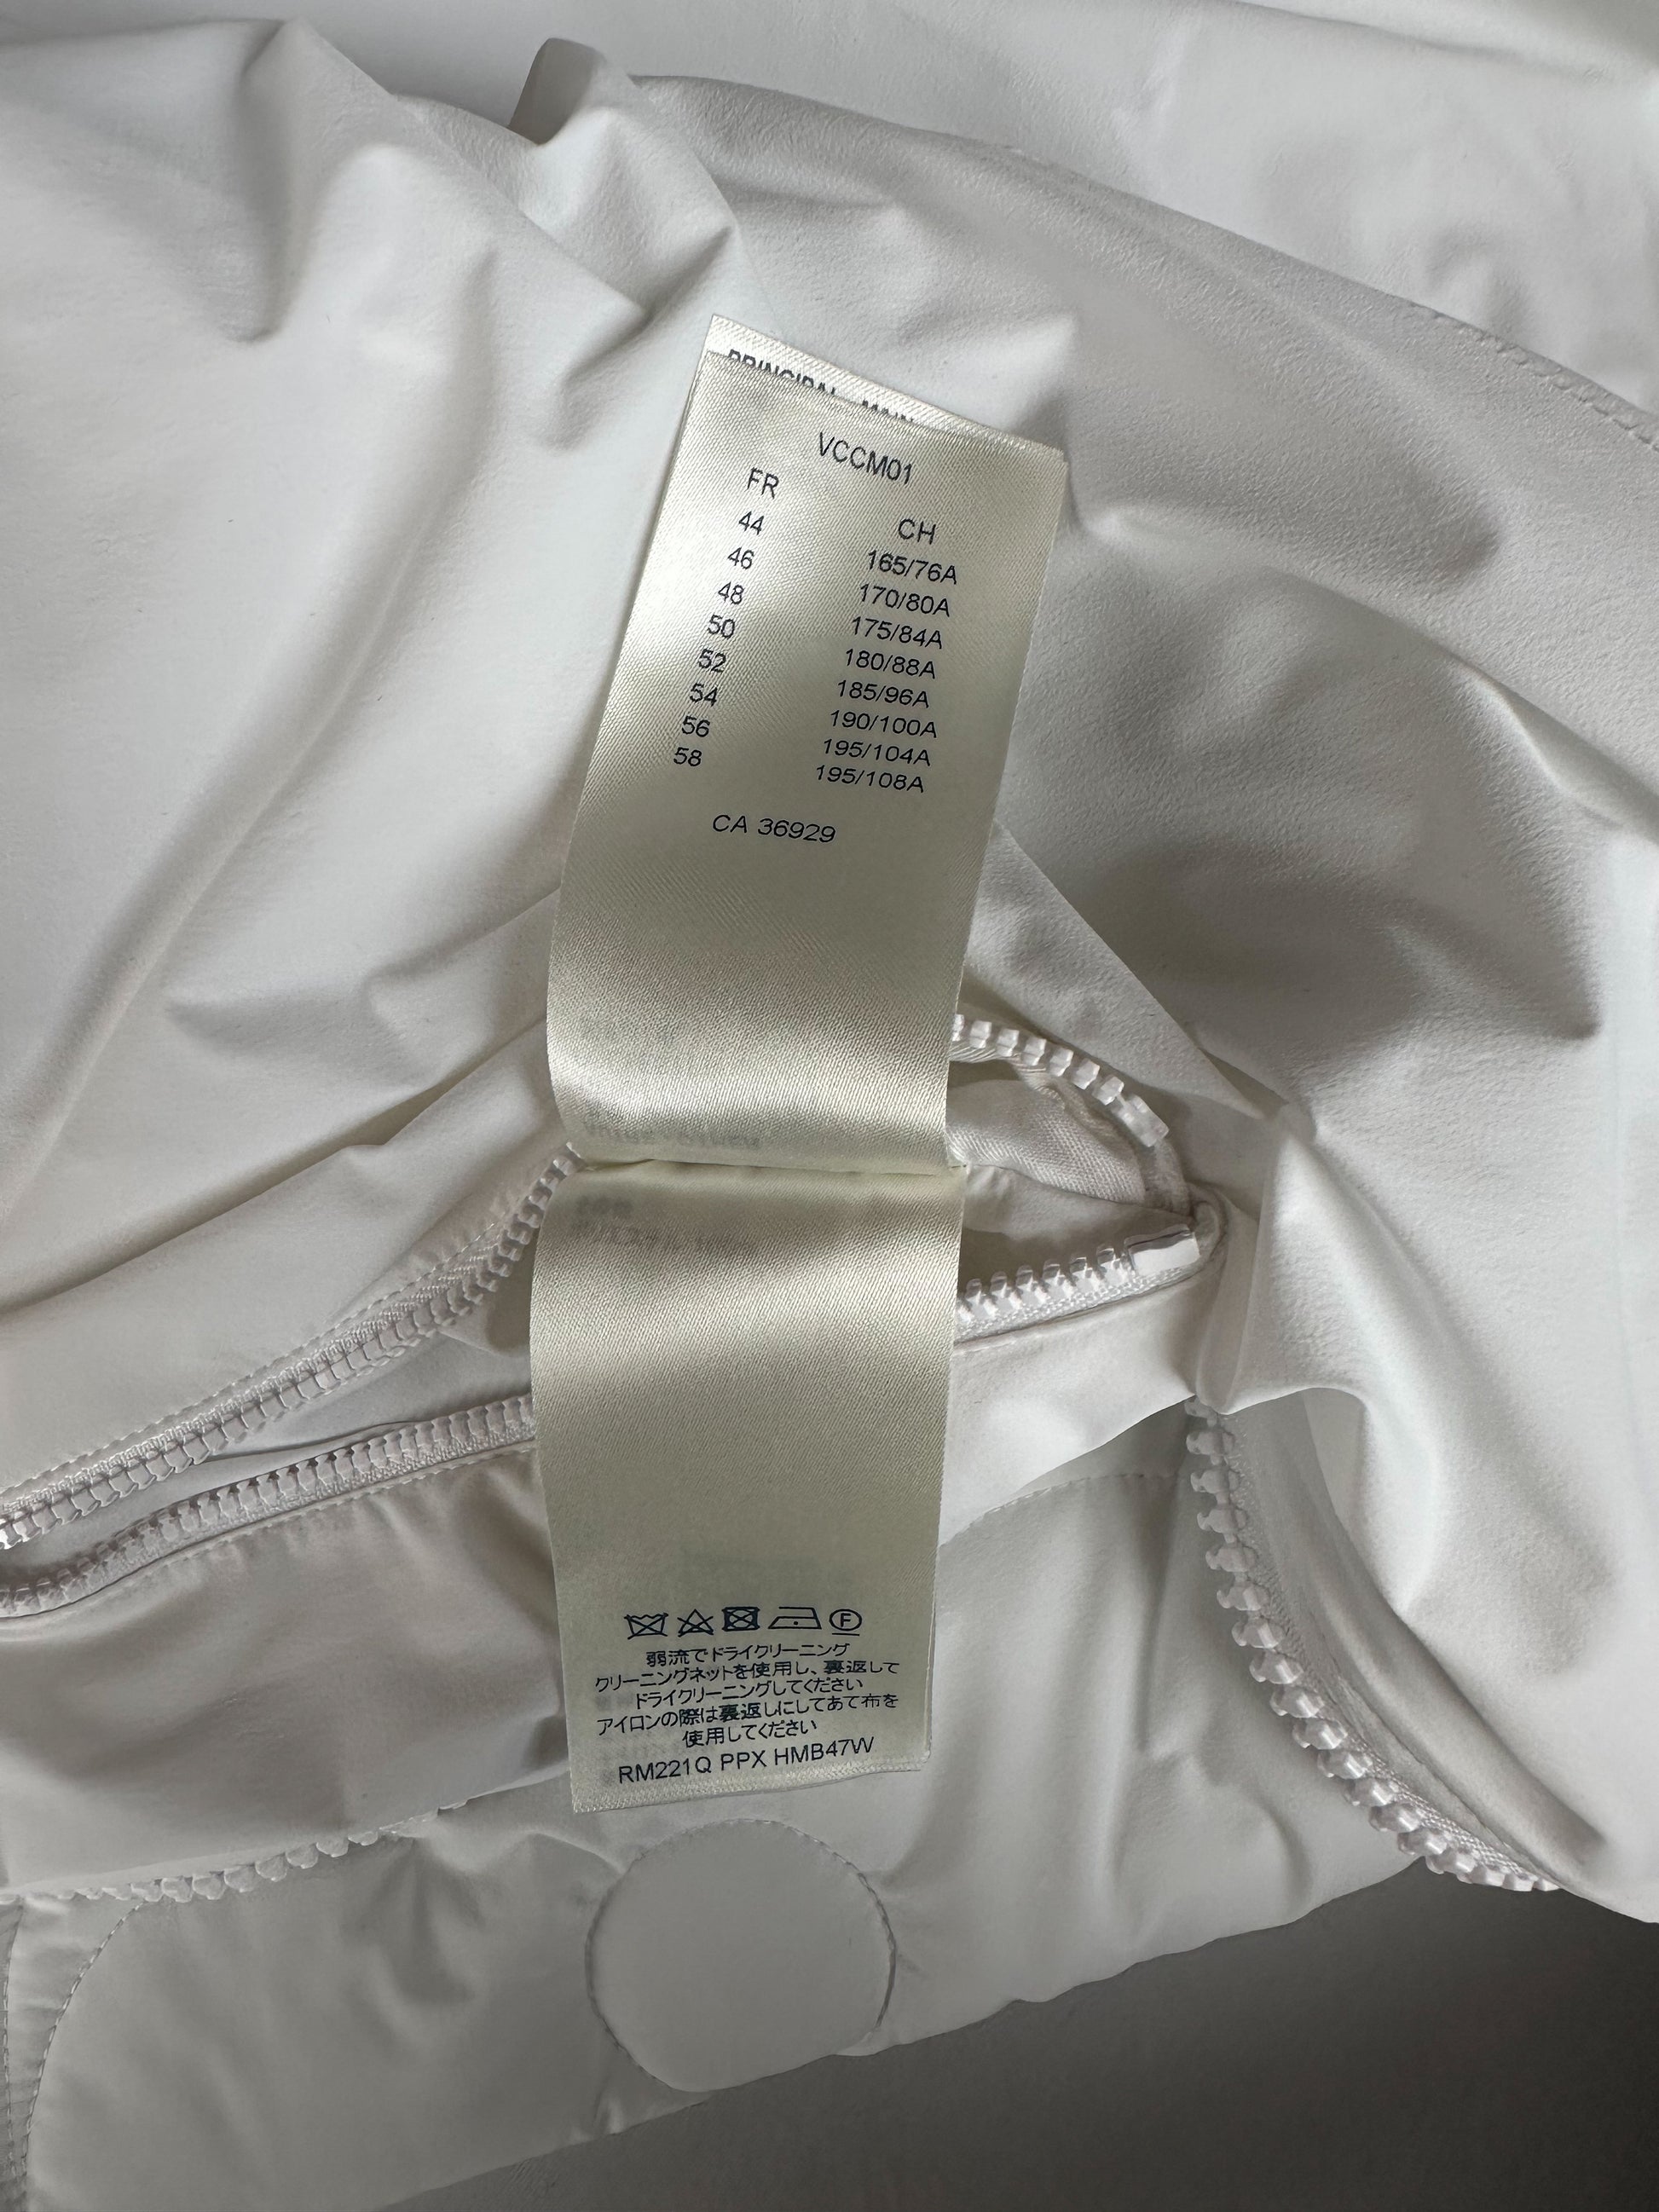 Louis Vuitton White Flower Monogram Puffer Jacket – Savonches